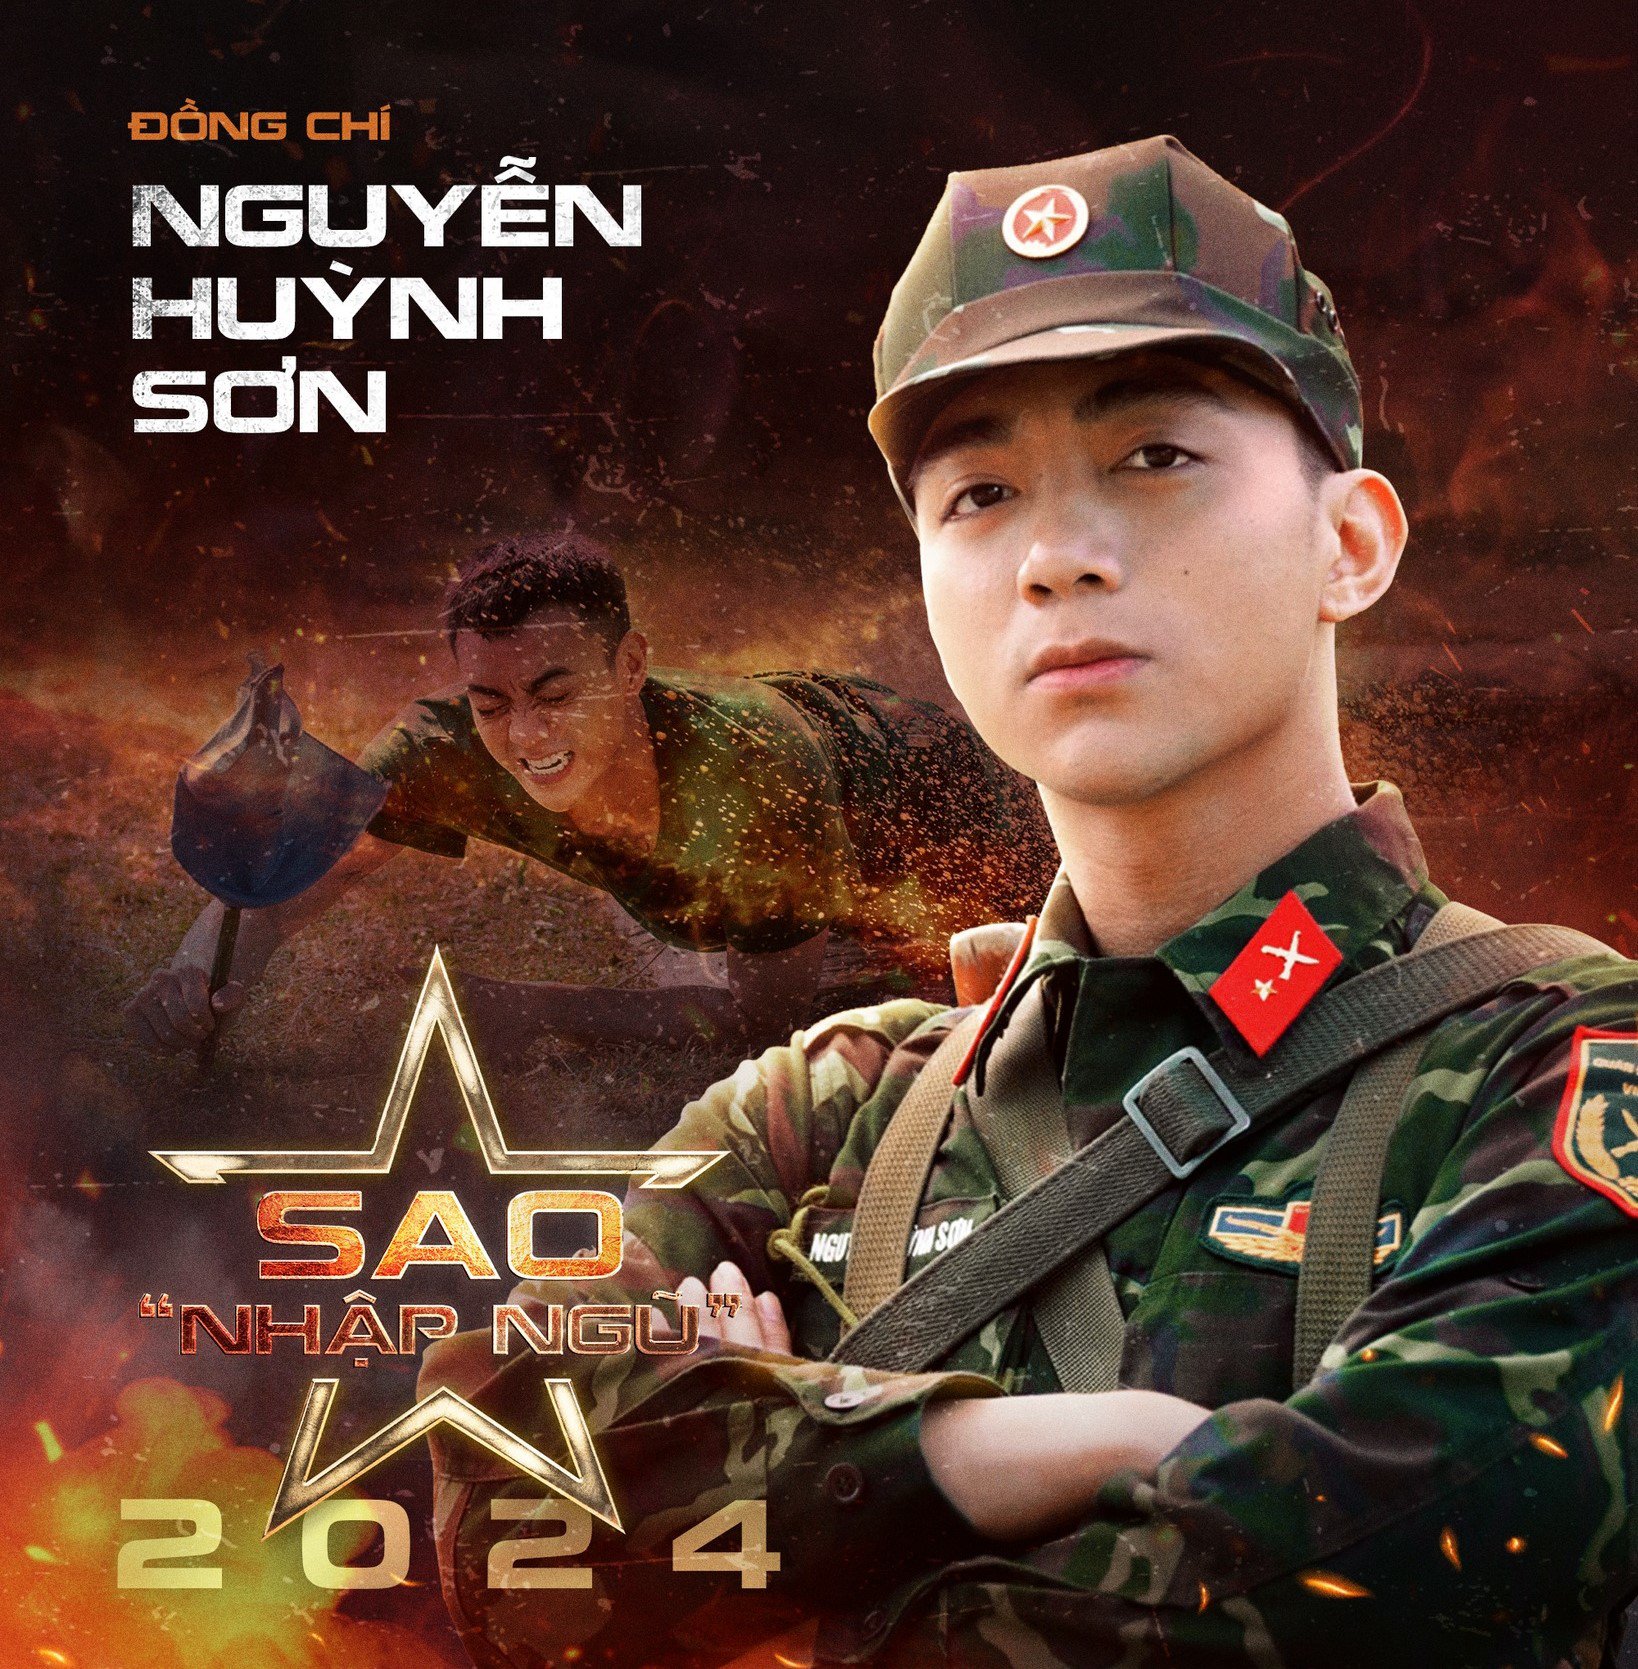 Đồng chí Nguyễn Huỳnh Sơn (nghệ danh: Soobin Hoàng Sơn) trong chương trình "Sao nhập ngũ''.